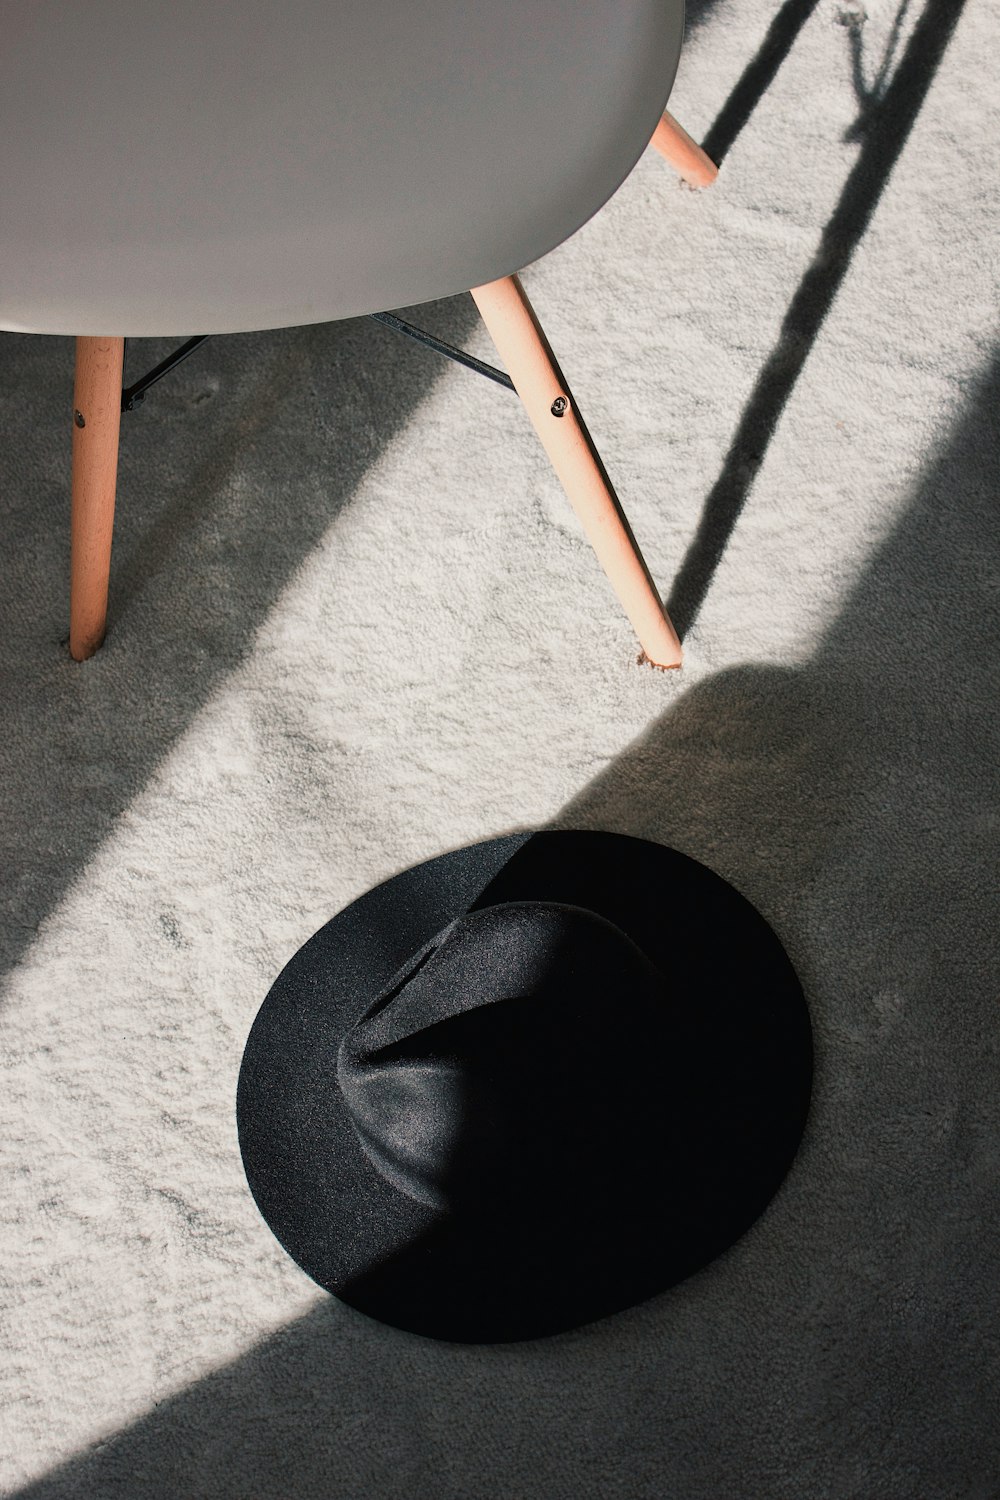 chapéu trilby preto no chão